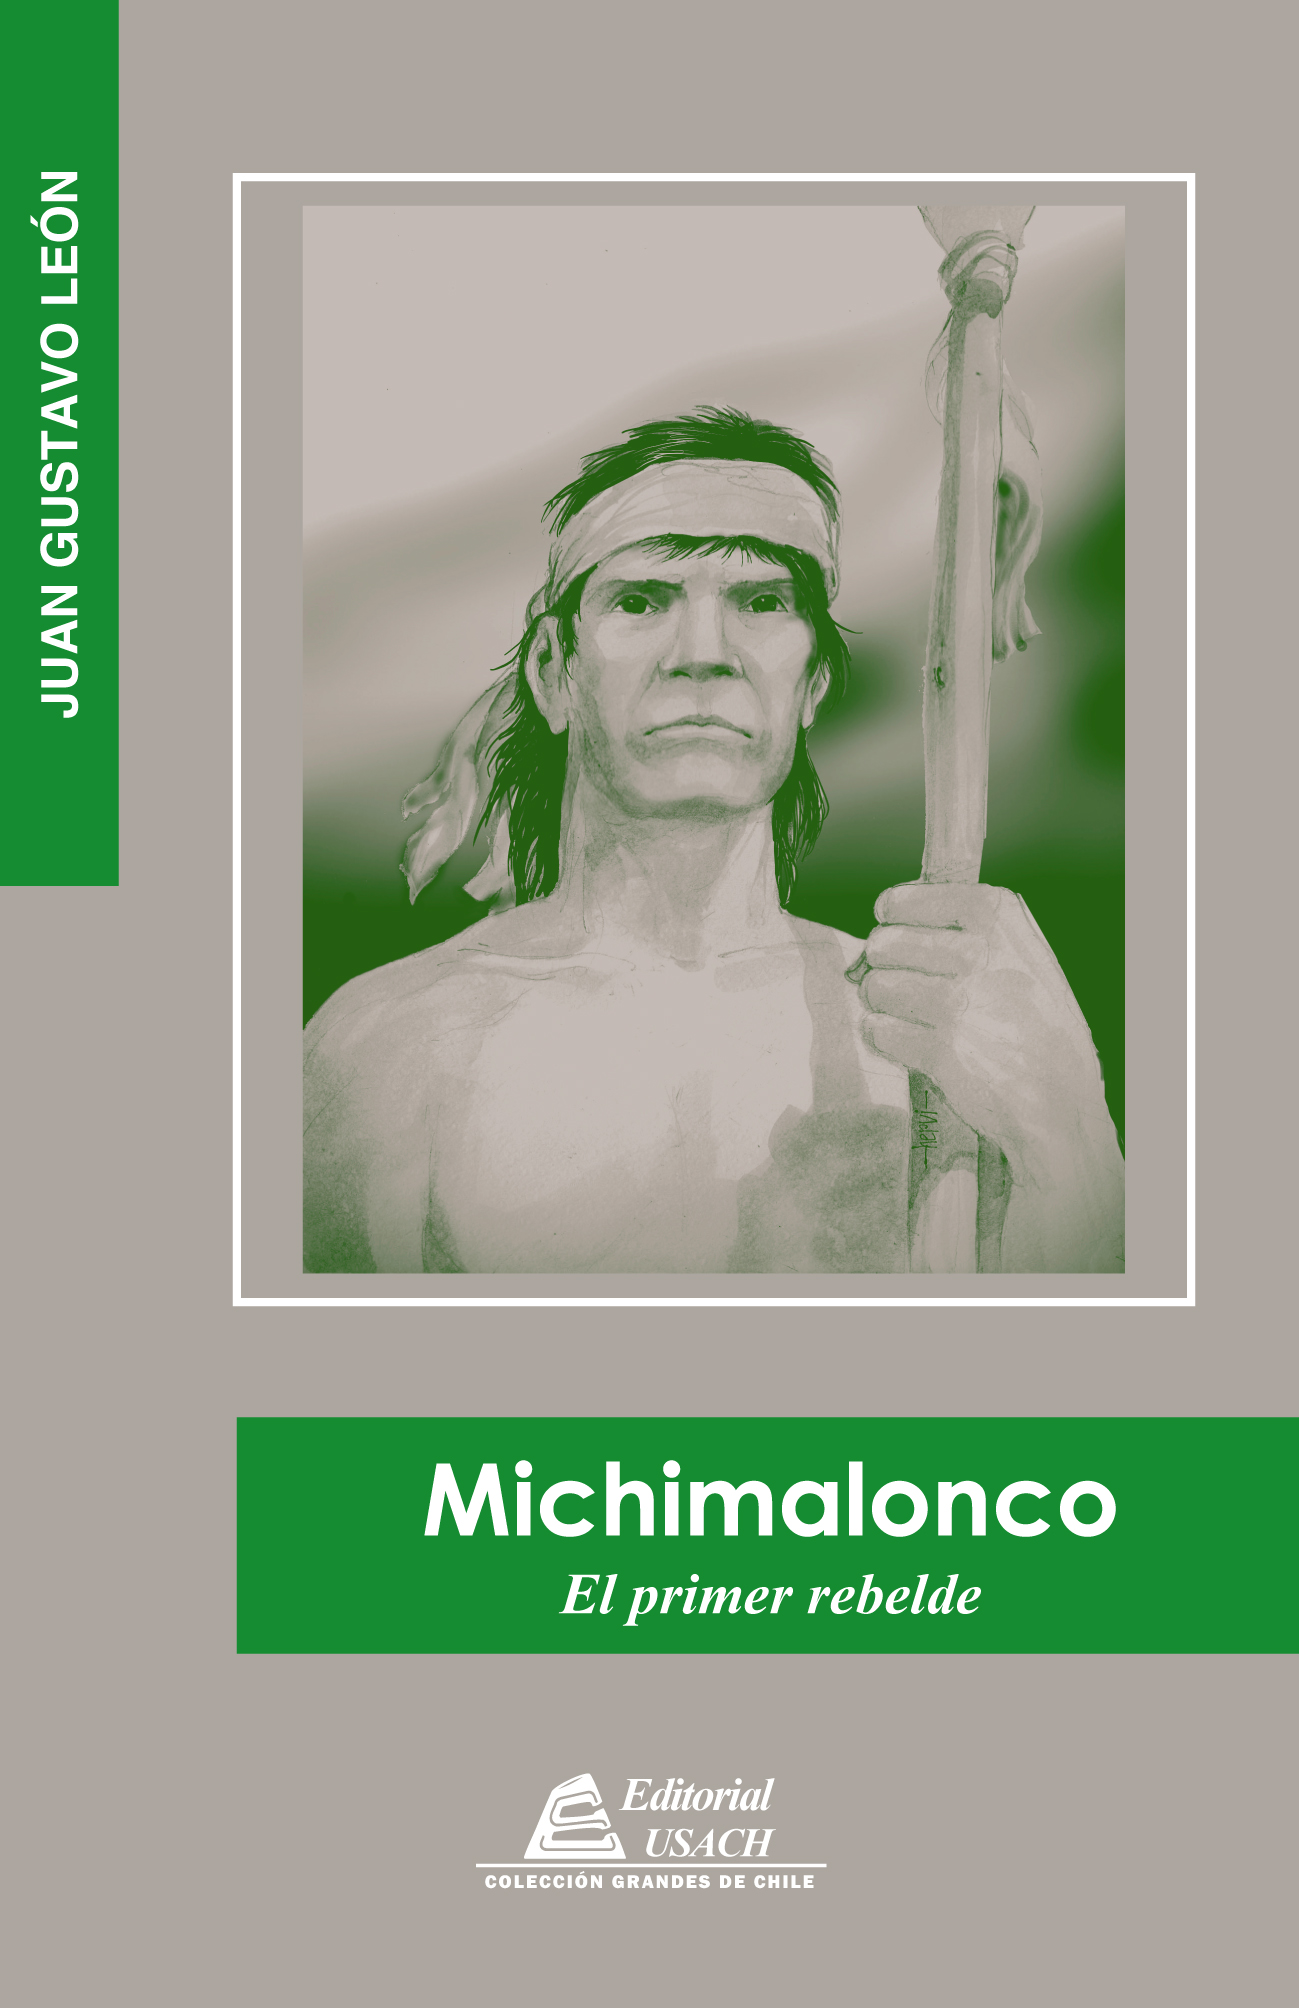 Michimalonco